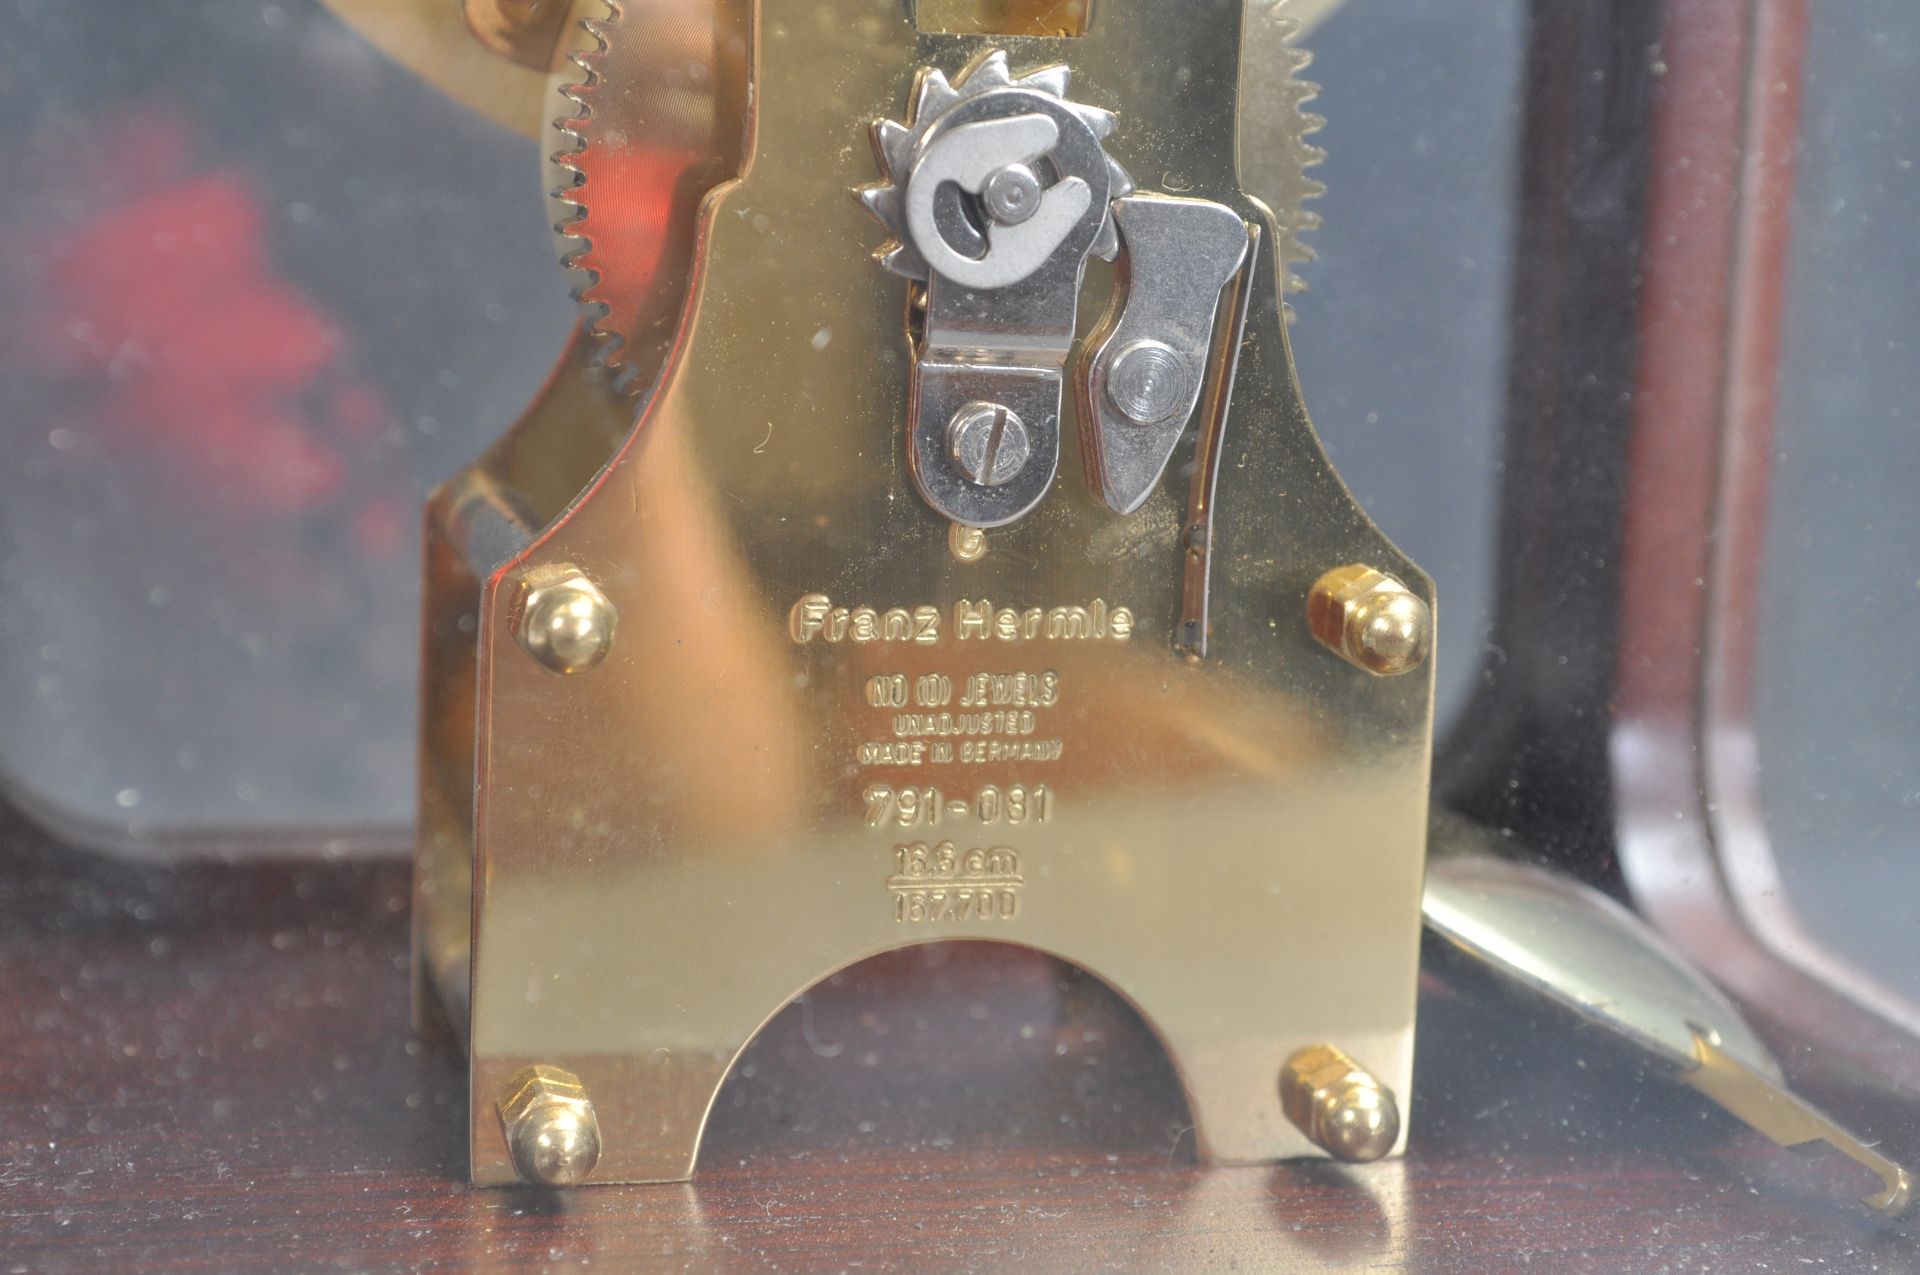 20TH CENTURY FRANZ HERMLE BRACKET MANTLE CLOCK. - Bild 6 aus 8